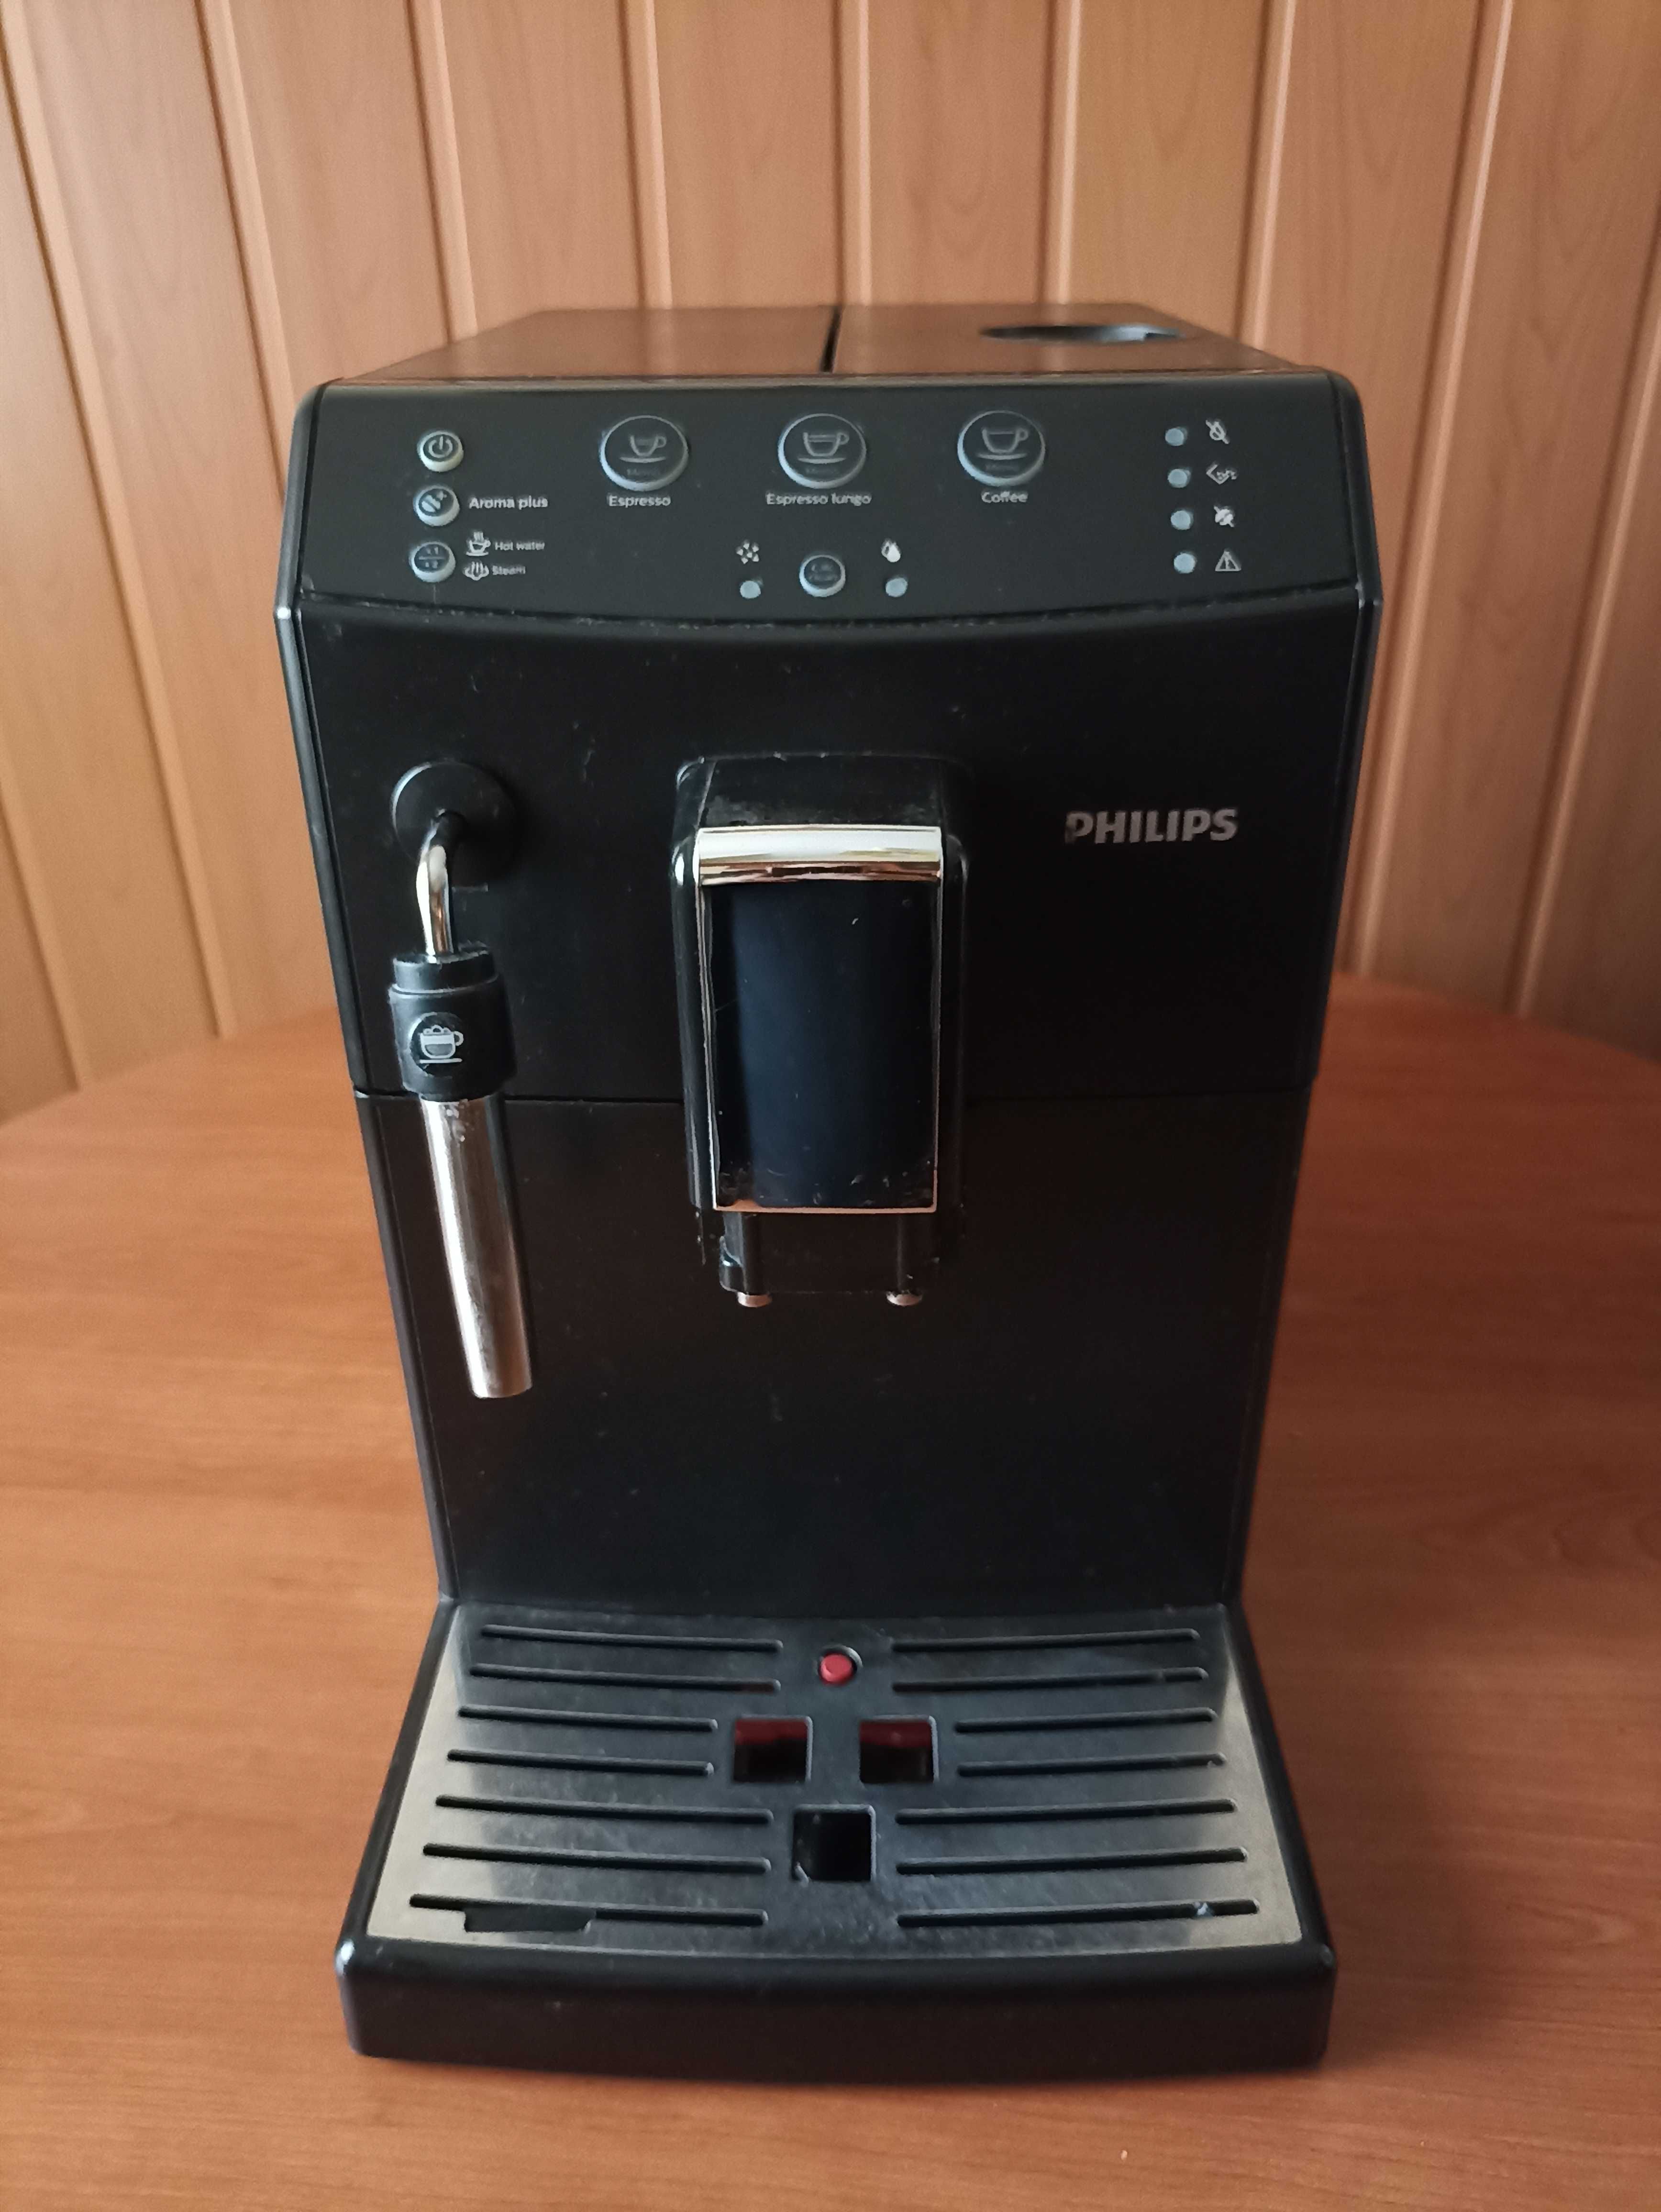 Vând expresor cafea automat Philips în stare bună. Preț negociabil.